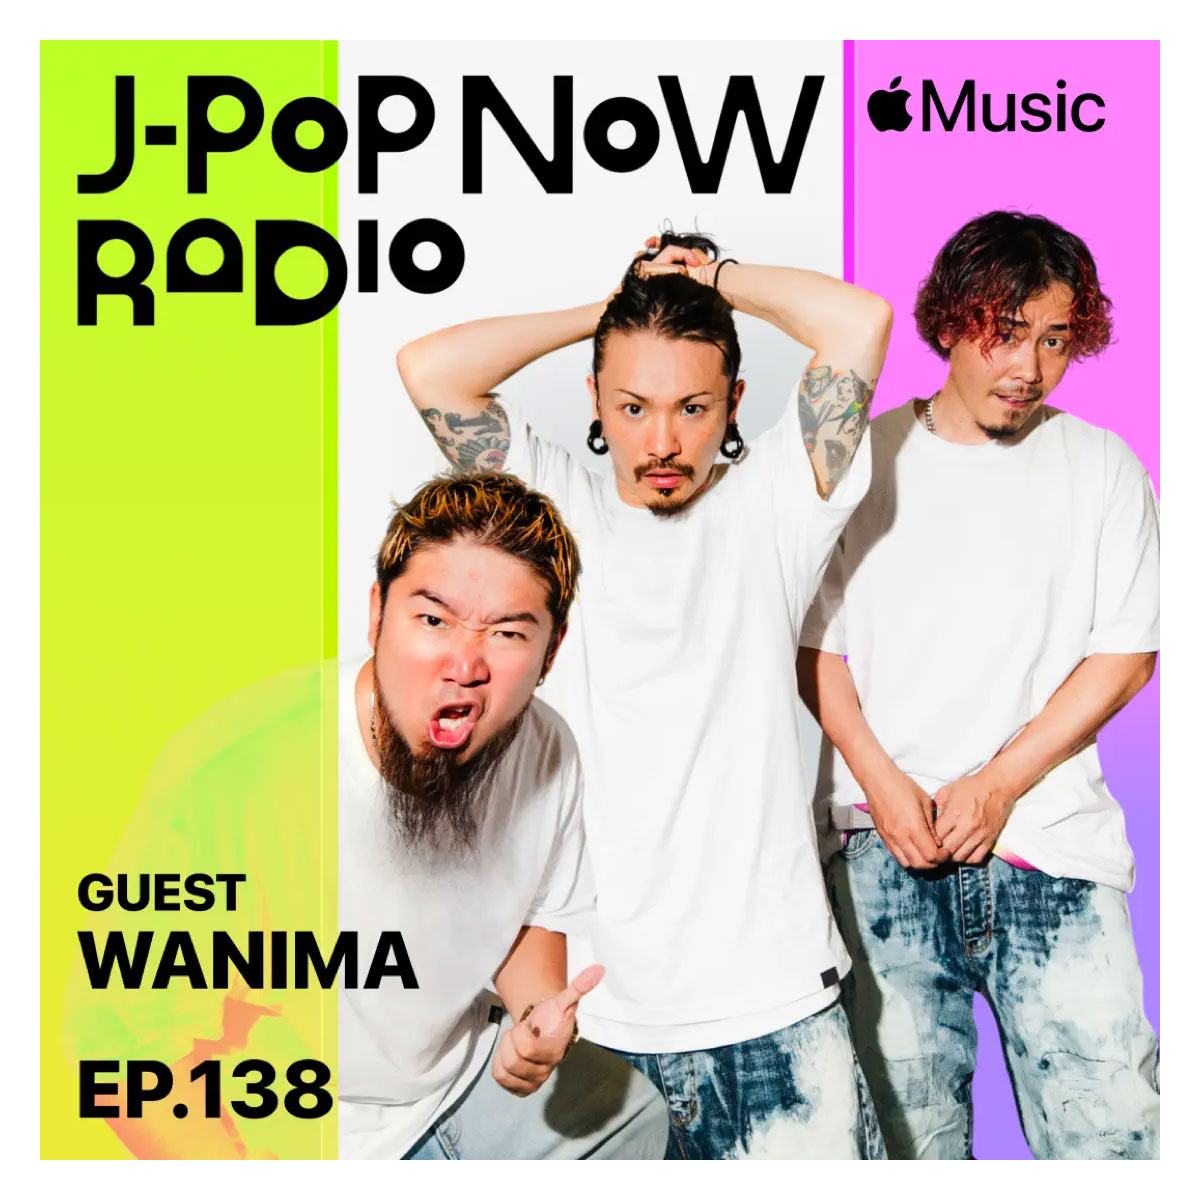 J-Pop Now Radio with Kentaro Ochiai ゲスト：WANIMA